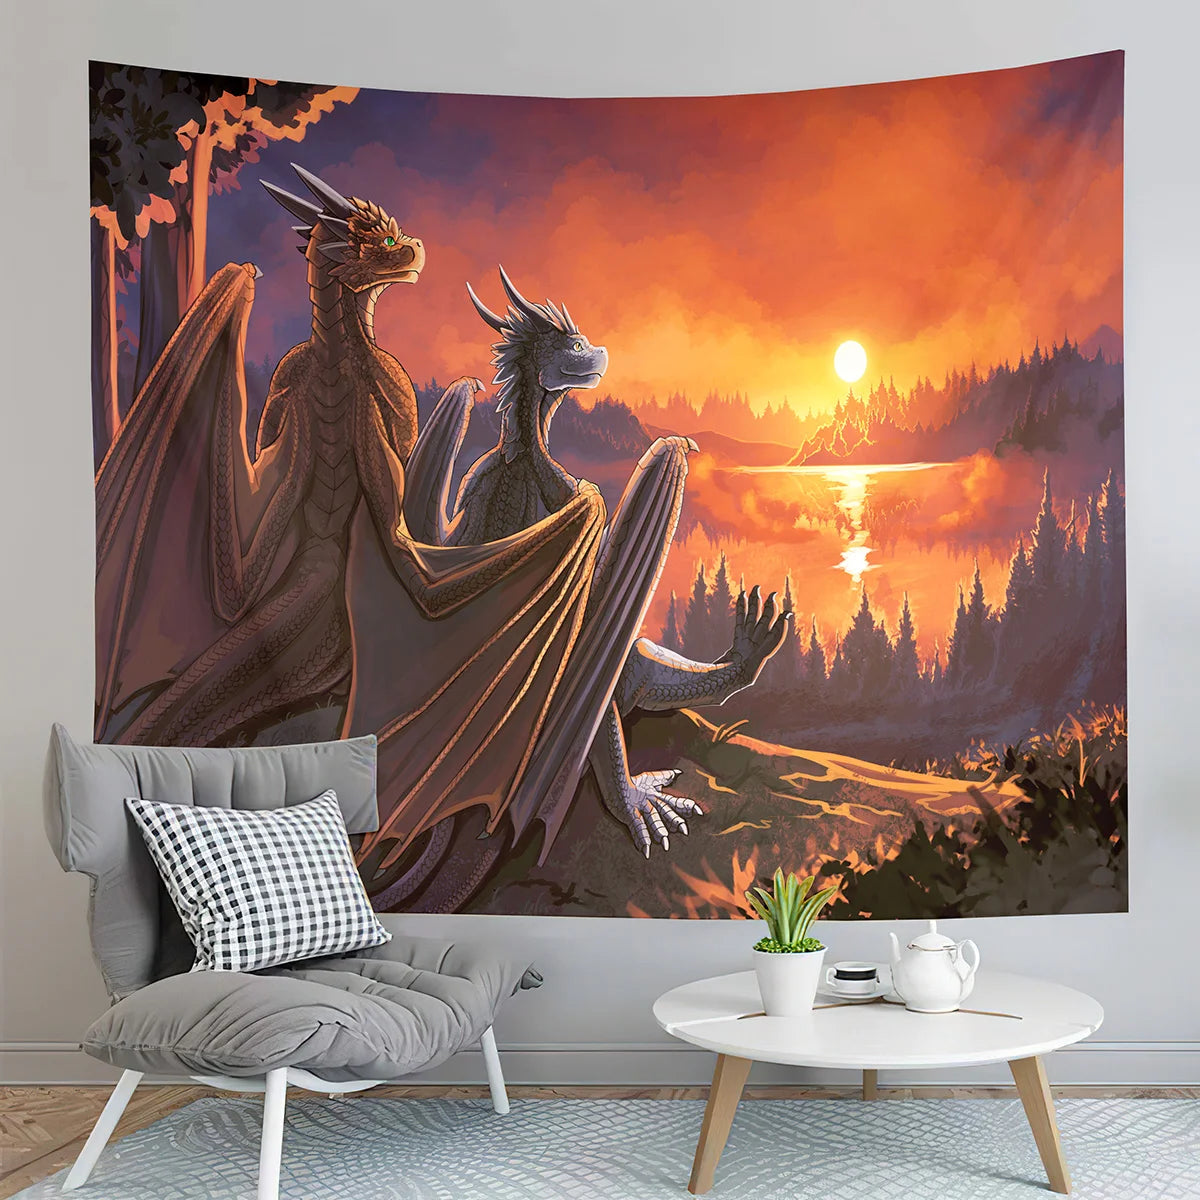 Tapiz de dragón Medieval, tapiz de puesta de sol de bosque, tapiz de animales del mundo de fantasía, tapiz para dormitorio, sala de estar, decoración del hogar